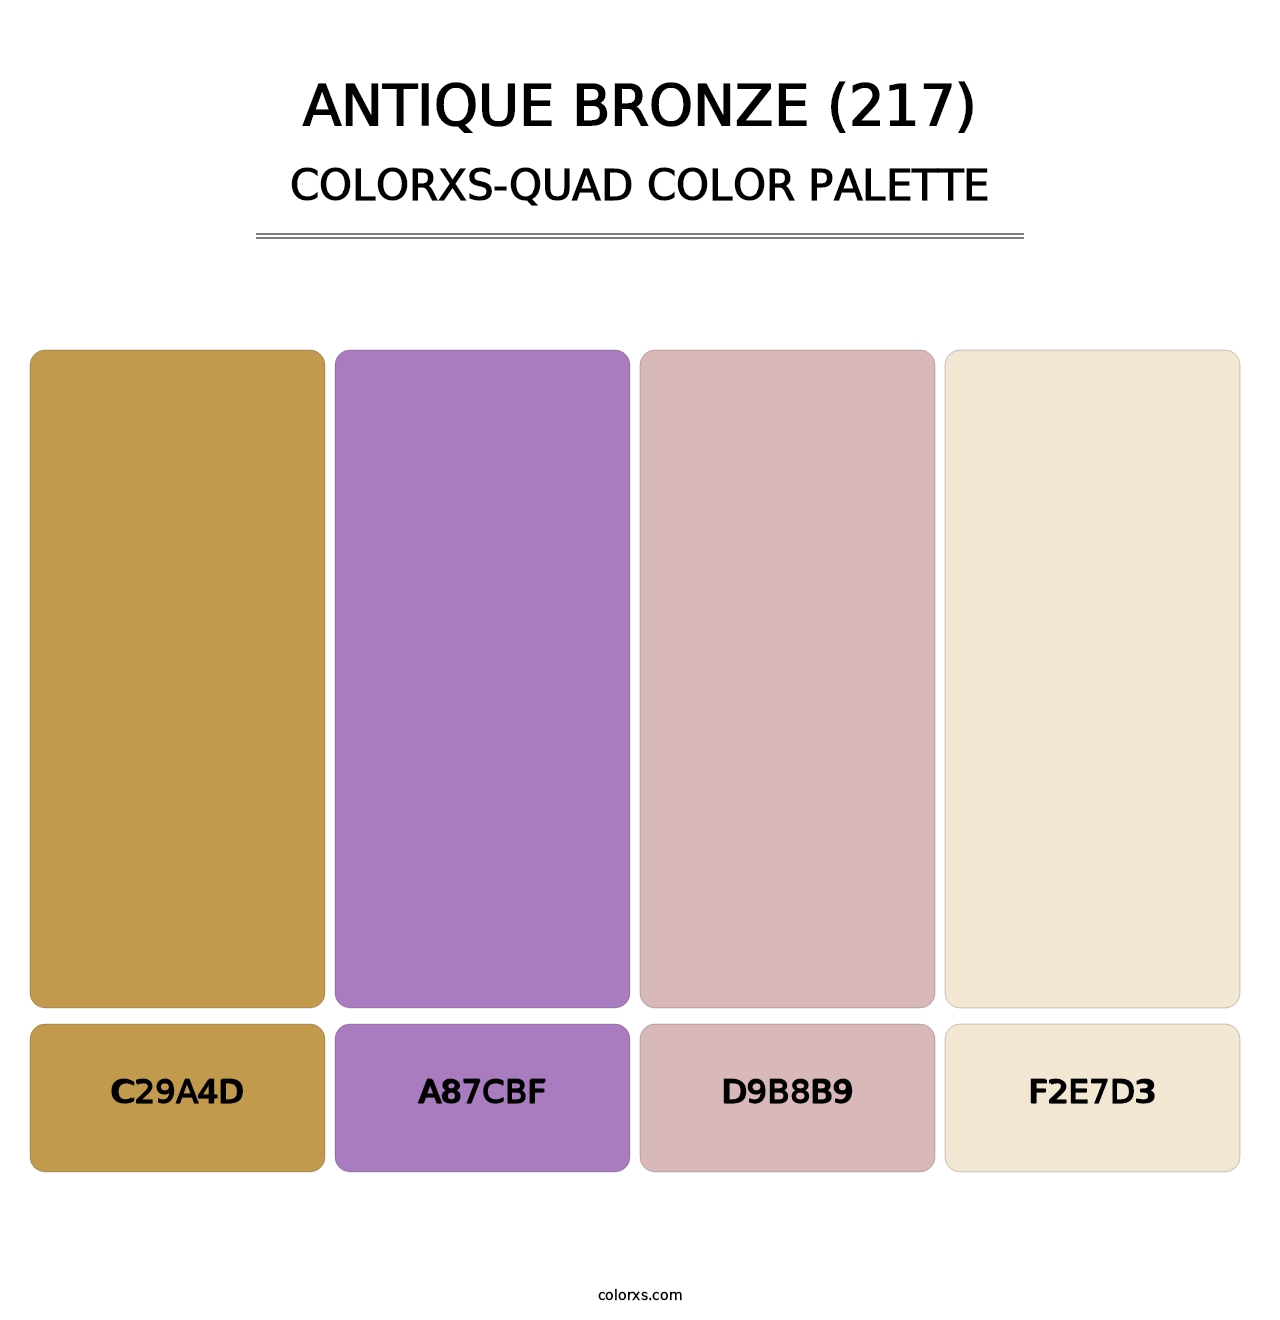 Antique Bronze (217) - Colorxs Quad Palette